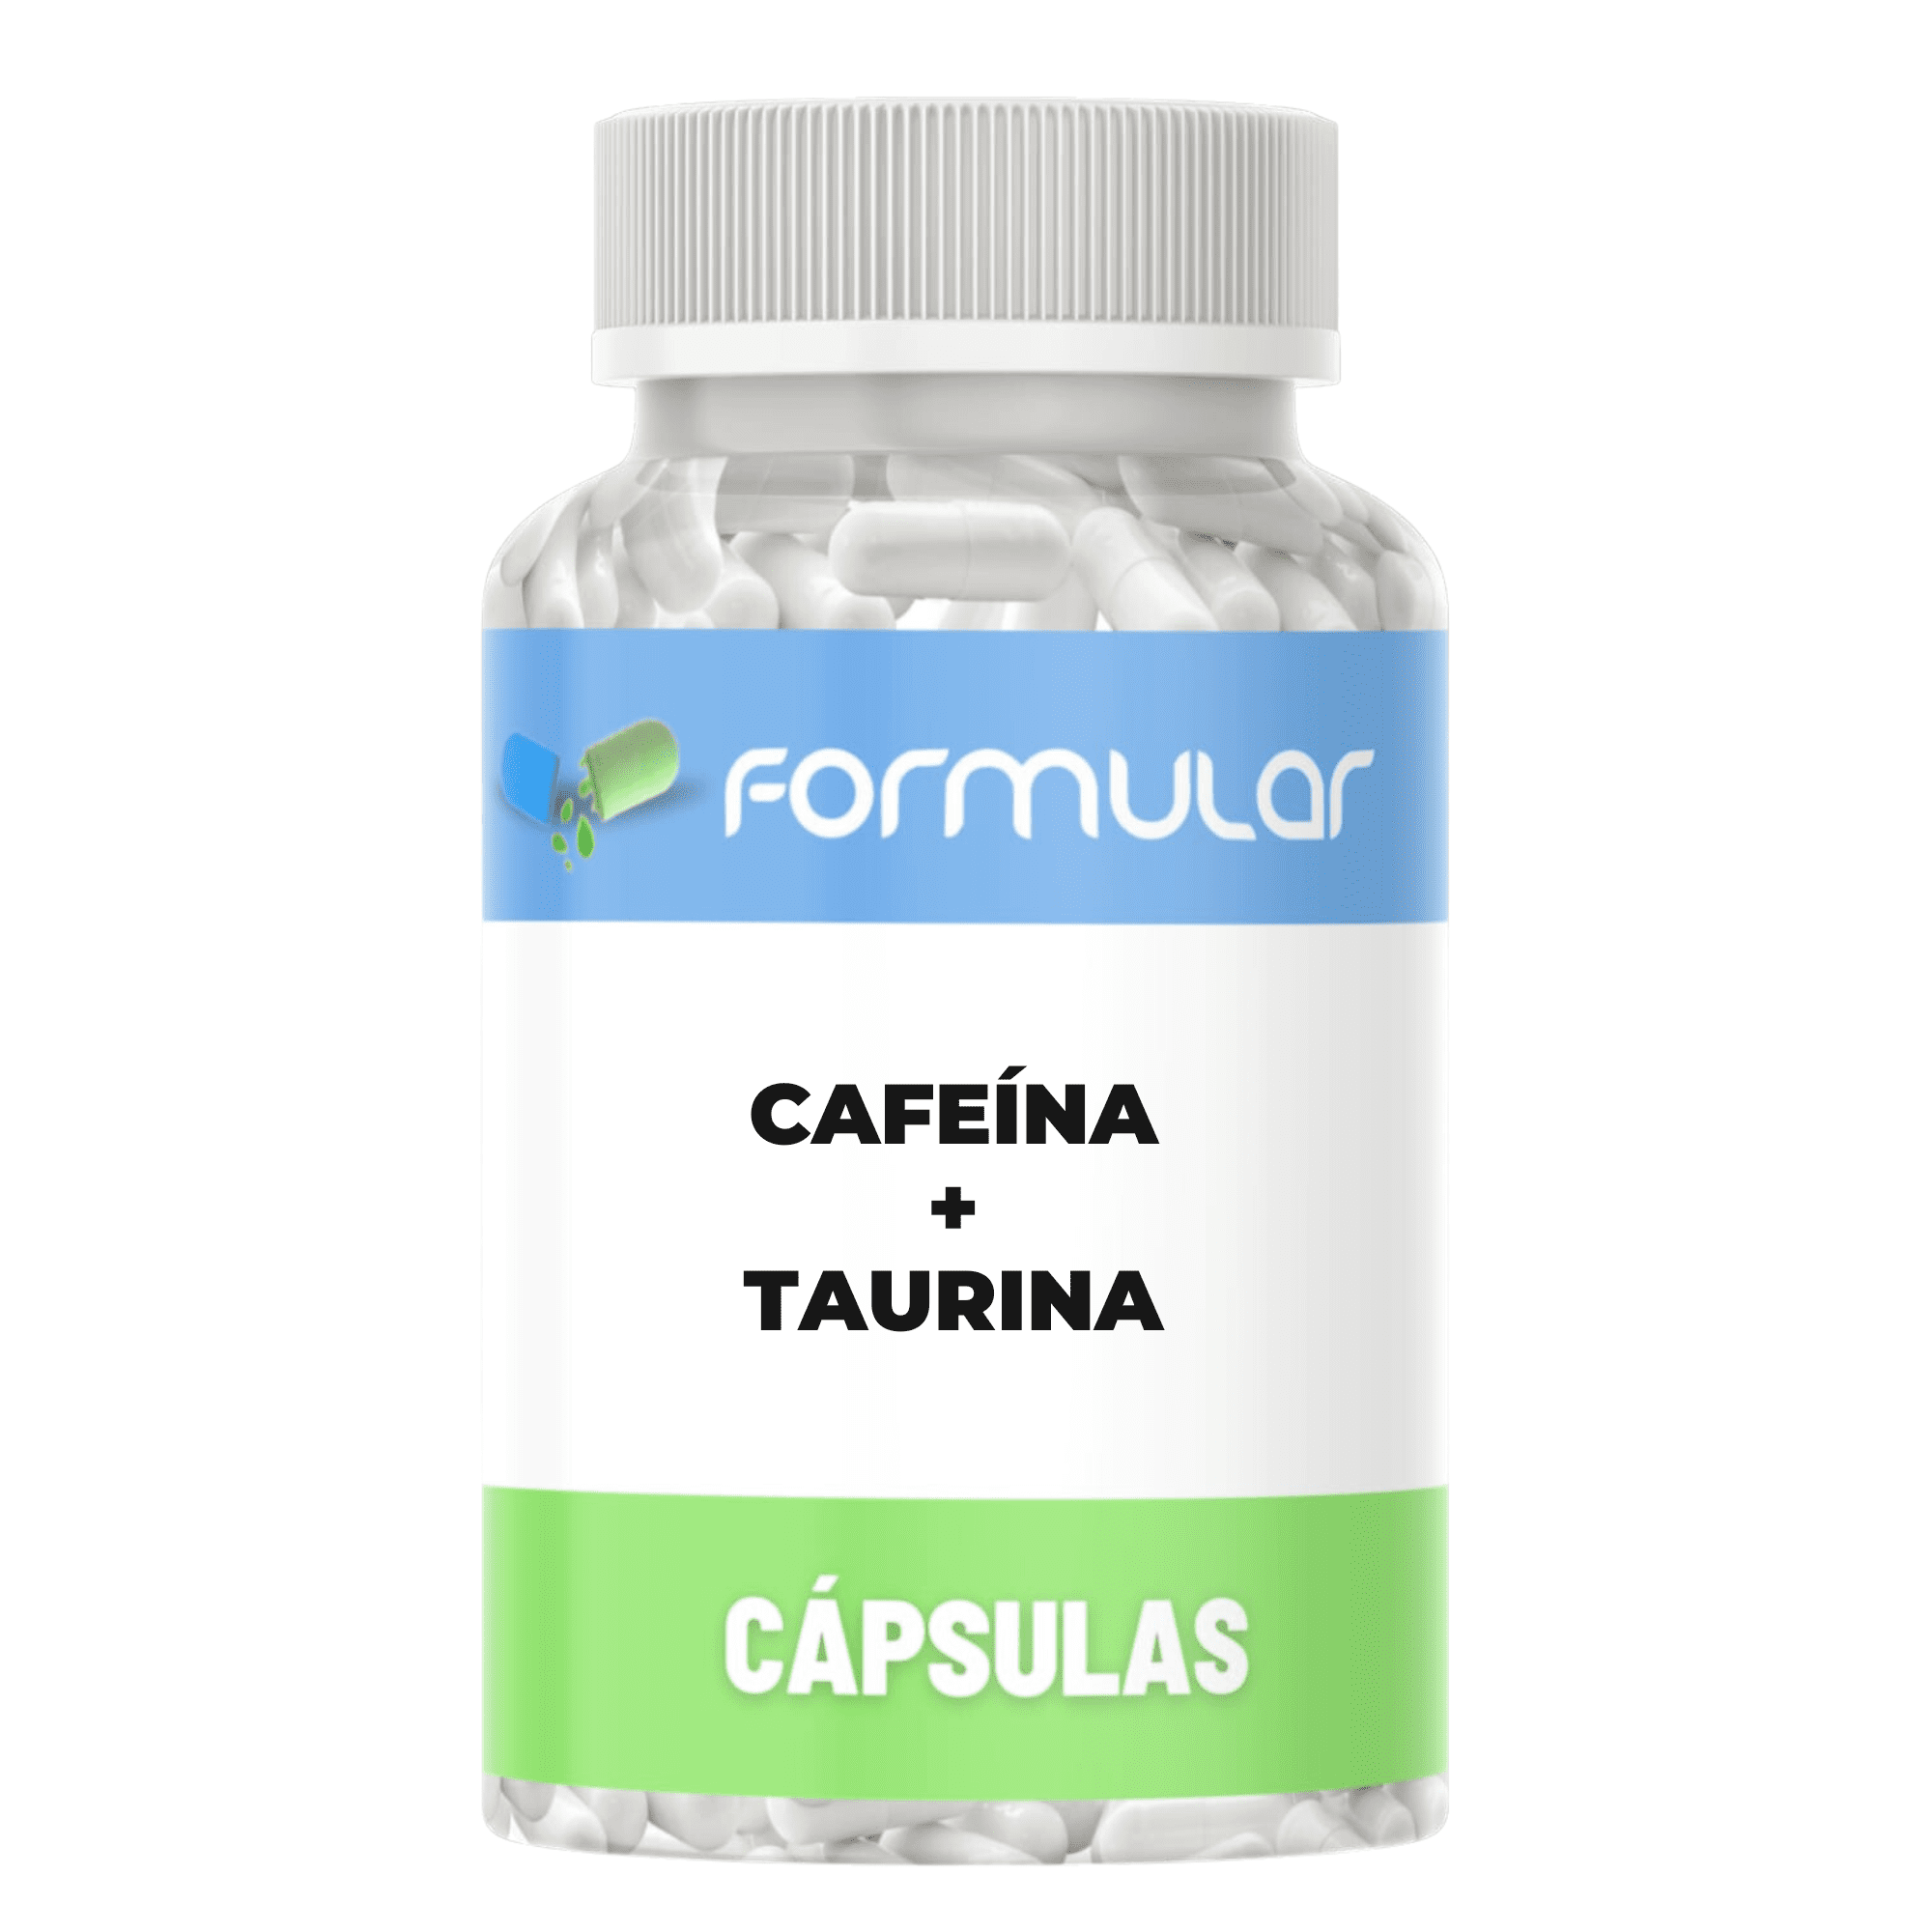 Cafeína 200mg  + Taurina 300mg - 60 Cápsulas - Aumenta energia, humor, motivação, foco